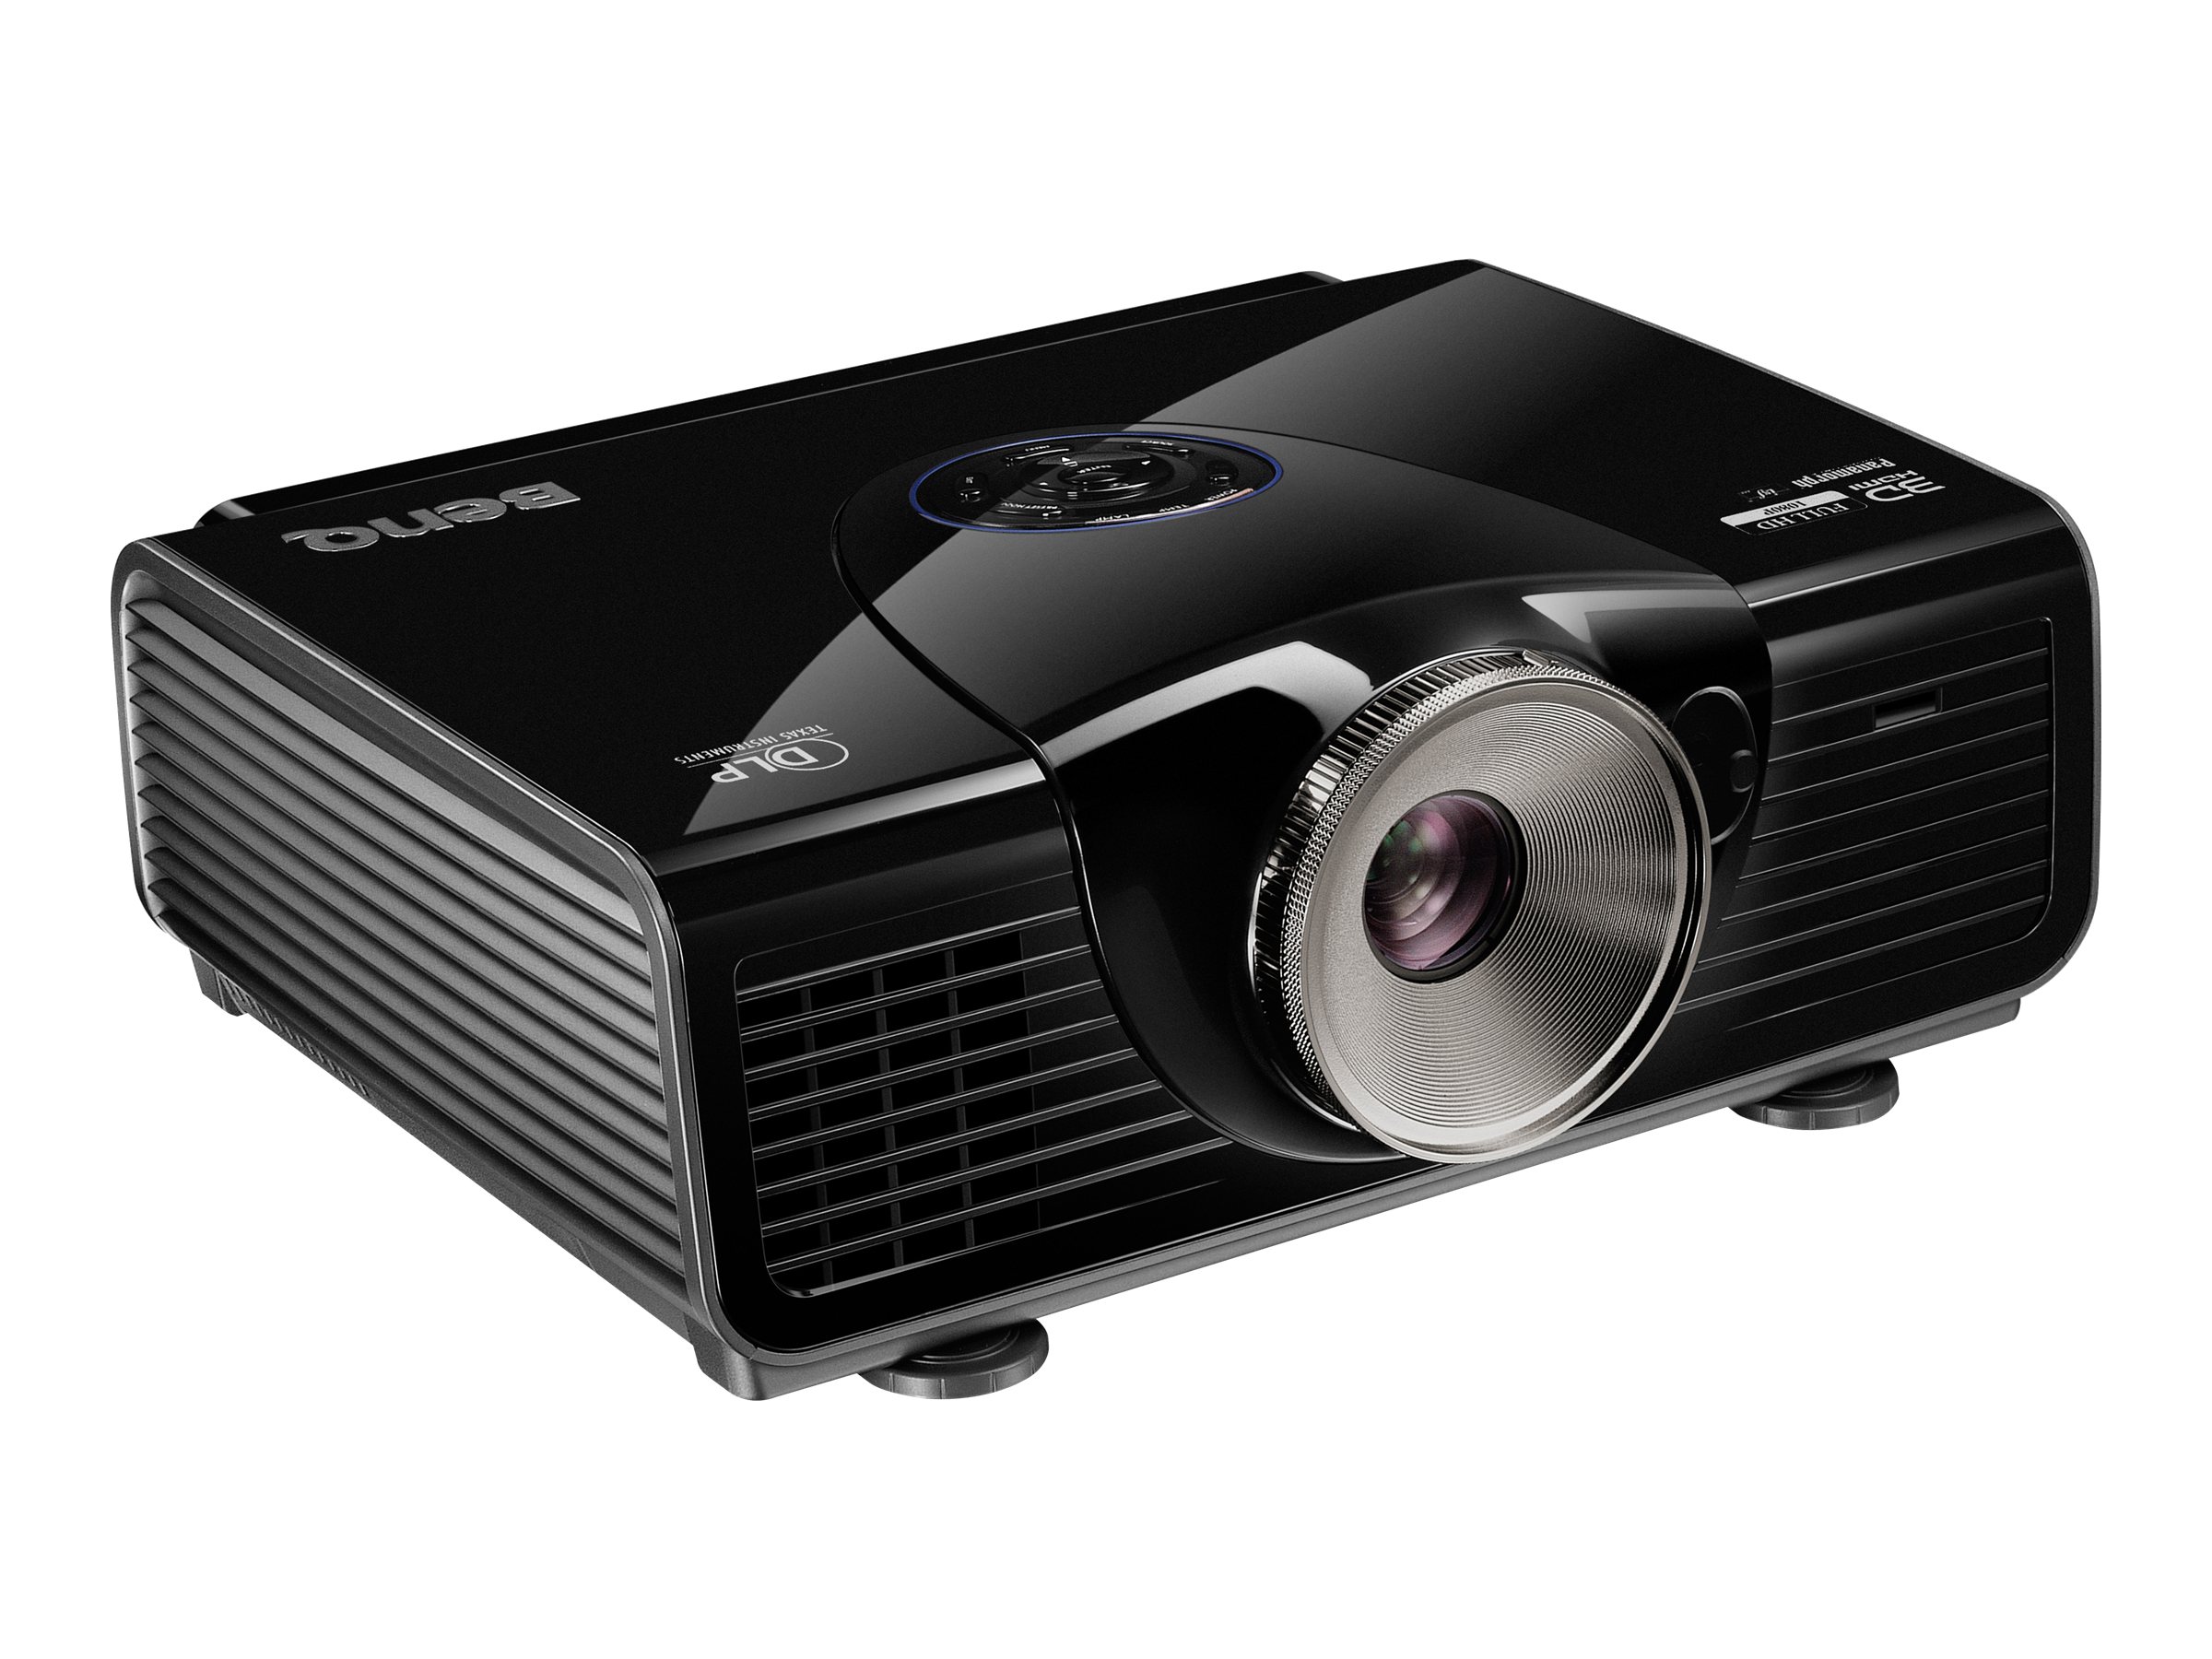 BenQ W7500 - Projecteur DLP - 3D - 2000 lumens - Full HD (1920 x 1080) - 16:9 - 1080p - 9H.J8W77.18E - Projecteurs pour home cinema